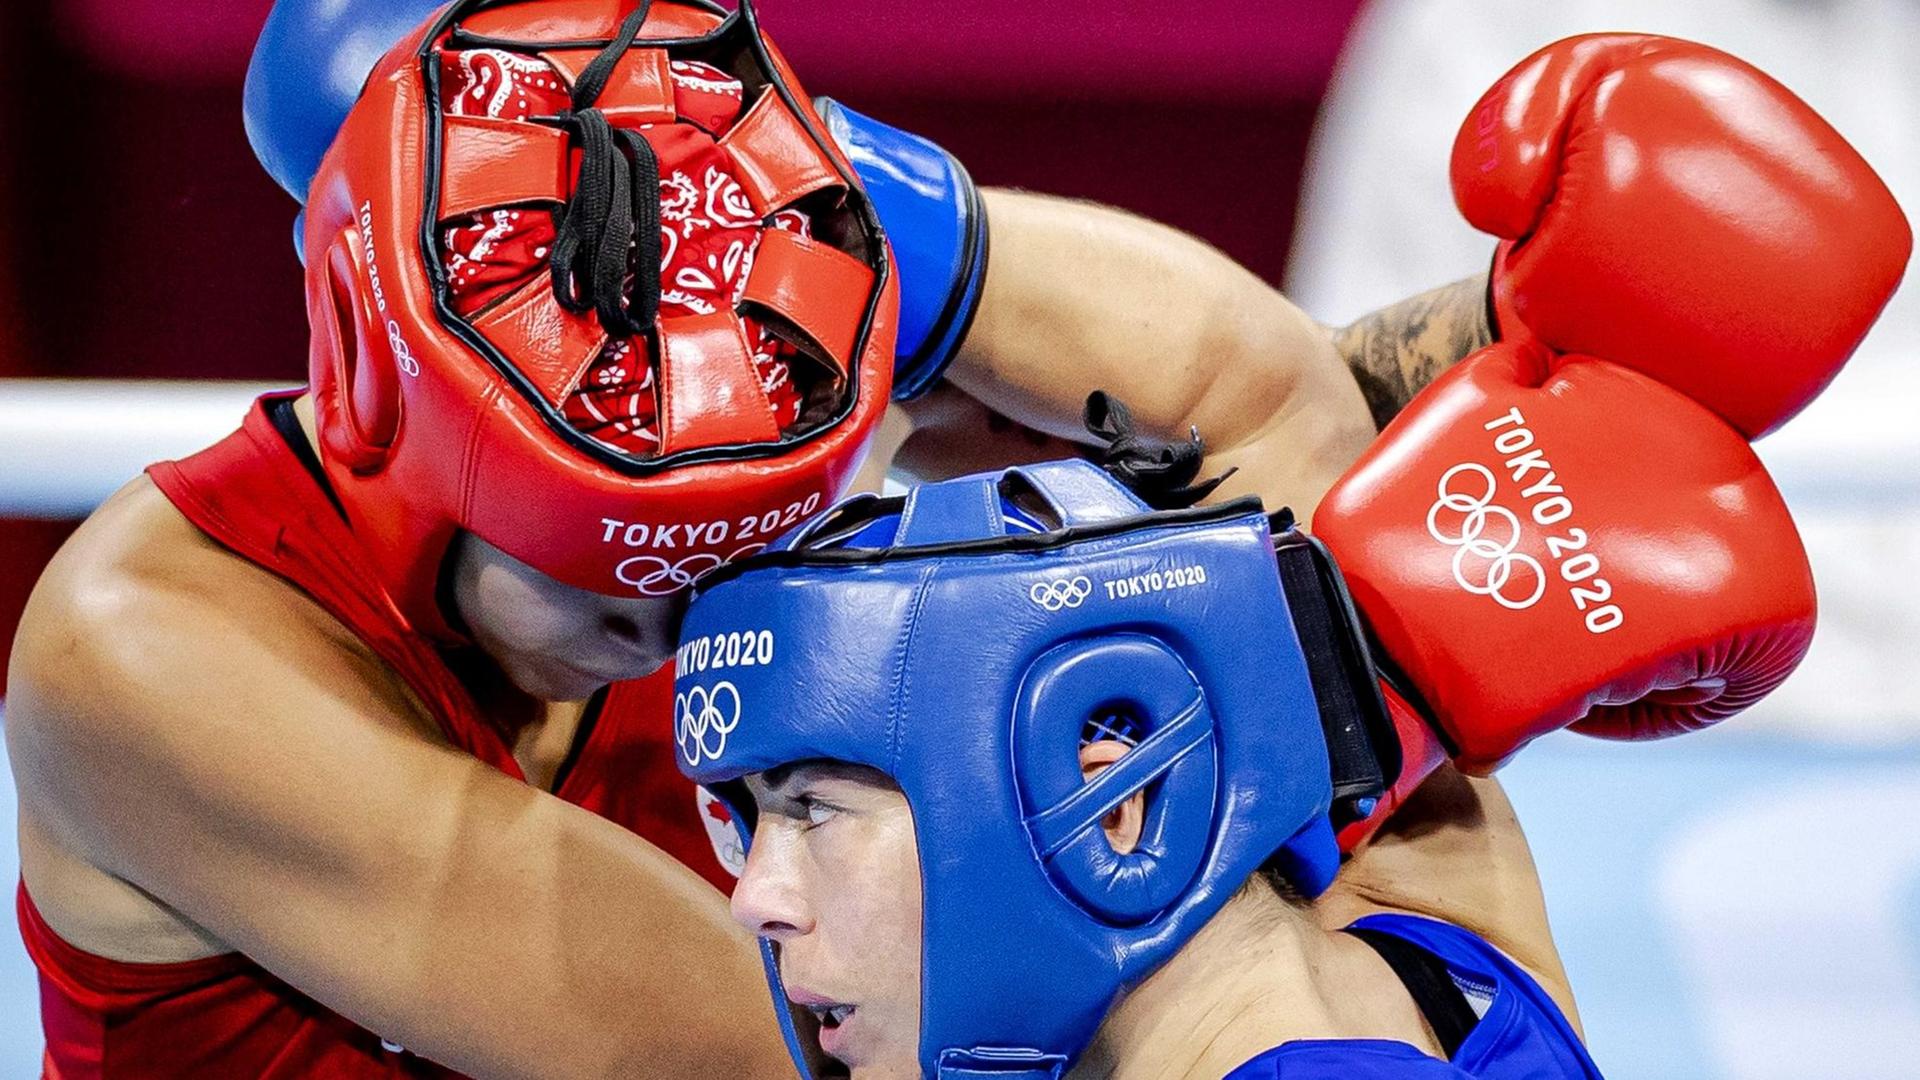 Nouchka Fontijn (blau) in der Kategorie unter 75 kg im Box-Halbfinalegegen die Kanadierin Tammara Thibeault bei den Olympischen Spielen in Tokio.